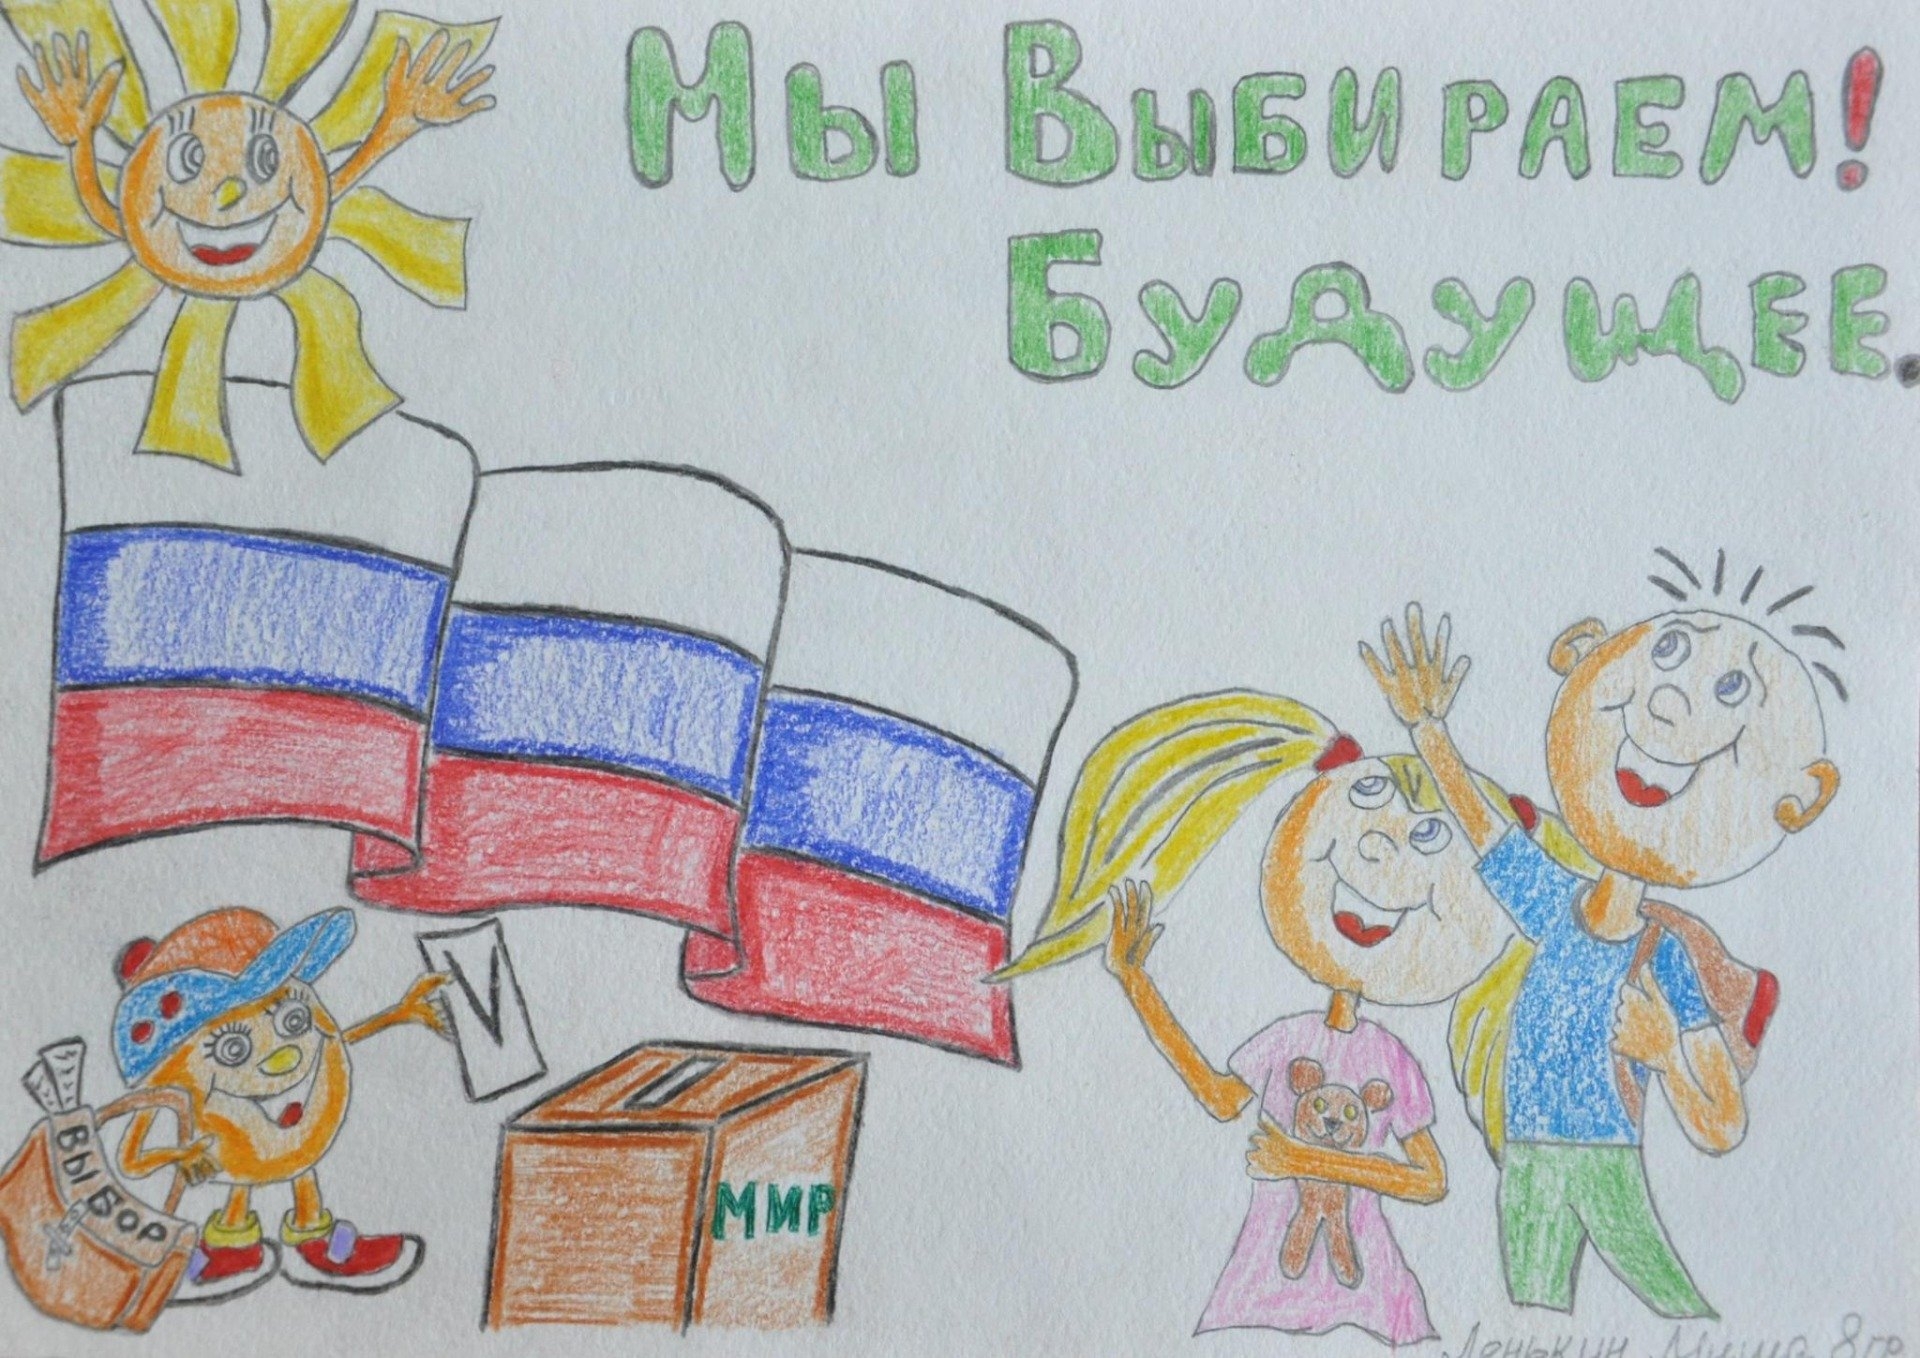 Республиканский конкурс детских рисунков «Выборы глазами детей!»